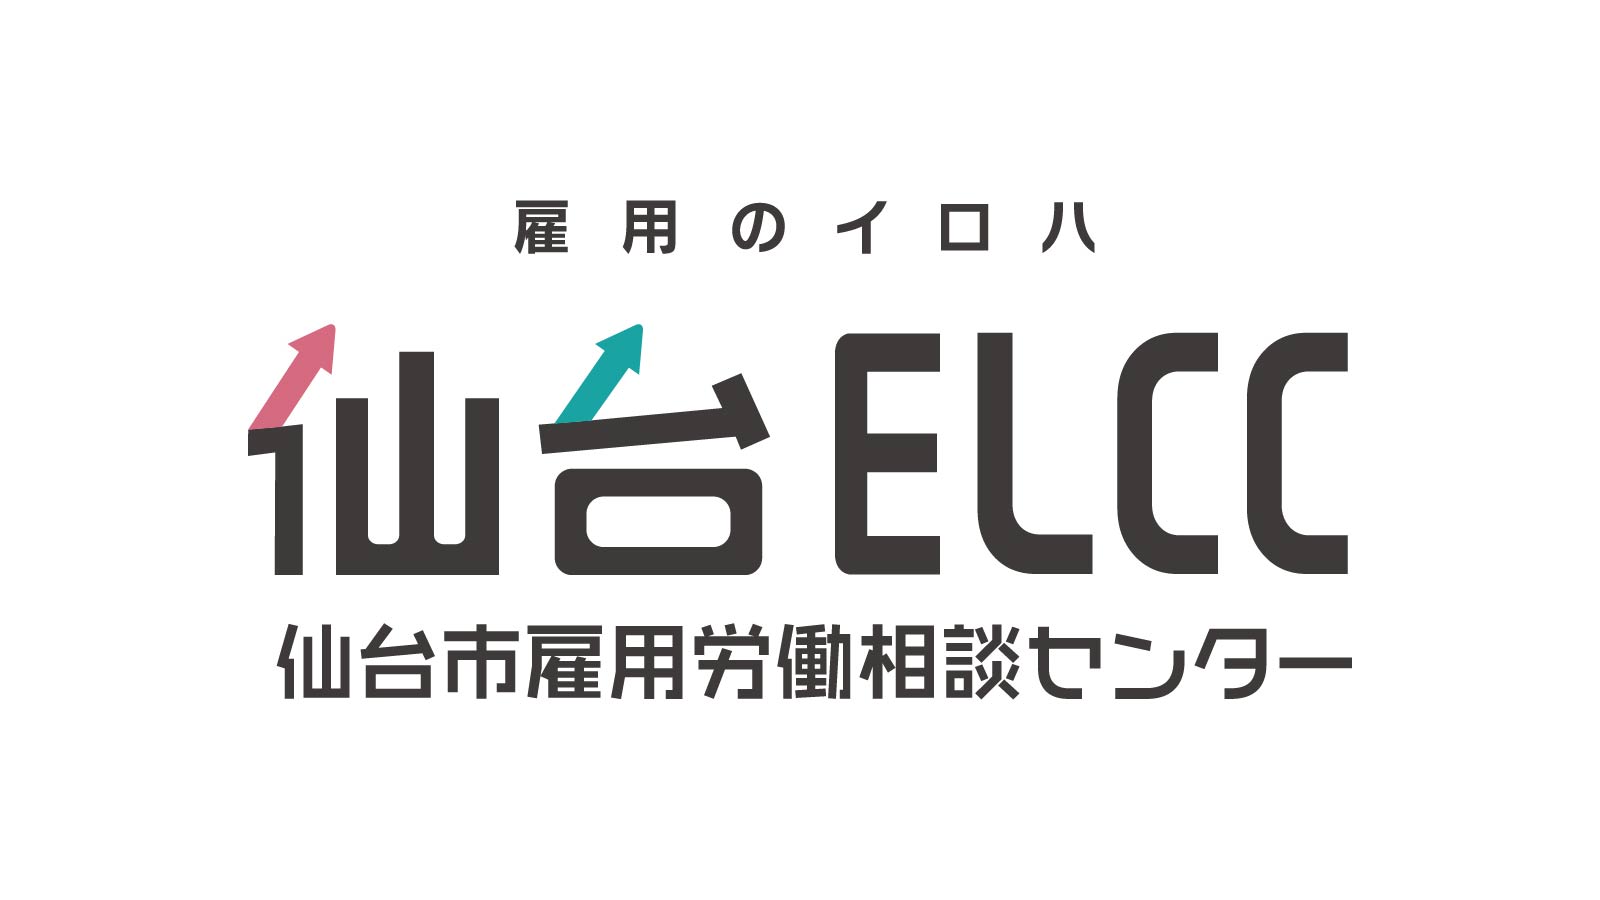 仙台ELCC主催セミナー 「有給休暇を取りやすい環境」のための「労務管理」 年5日有給休暇取得の義務化に備えて